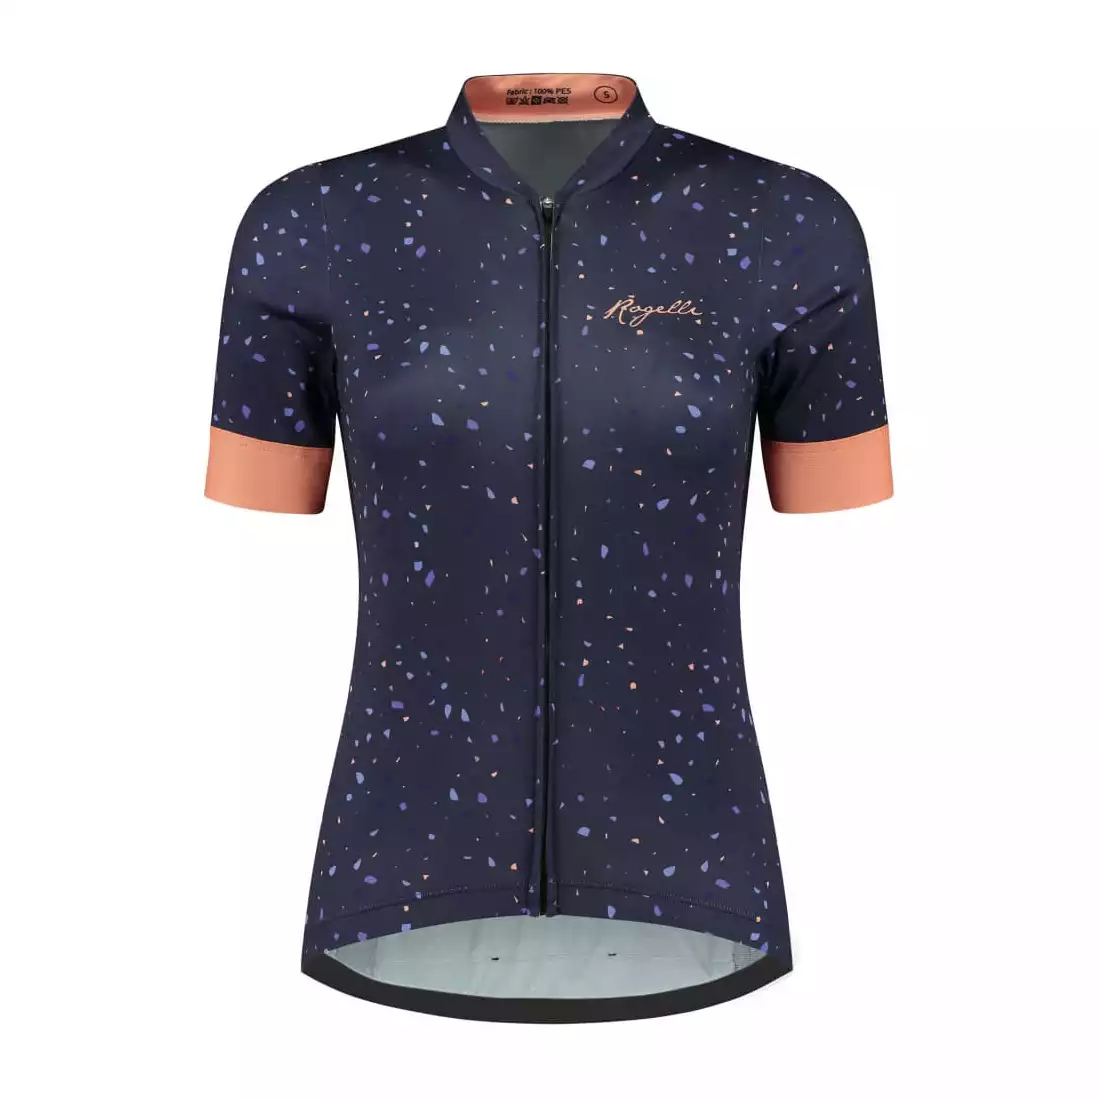 Rogelli TERRAZZO dámský cyklistický dres, fialovo-korálový